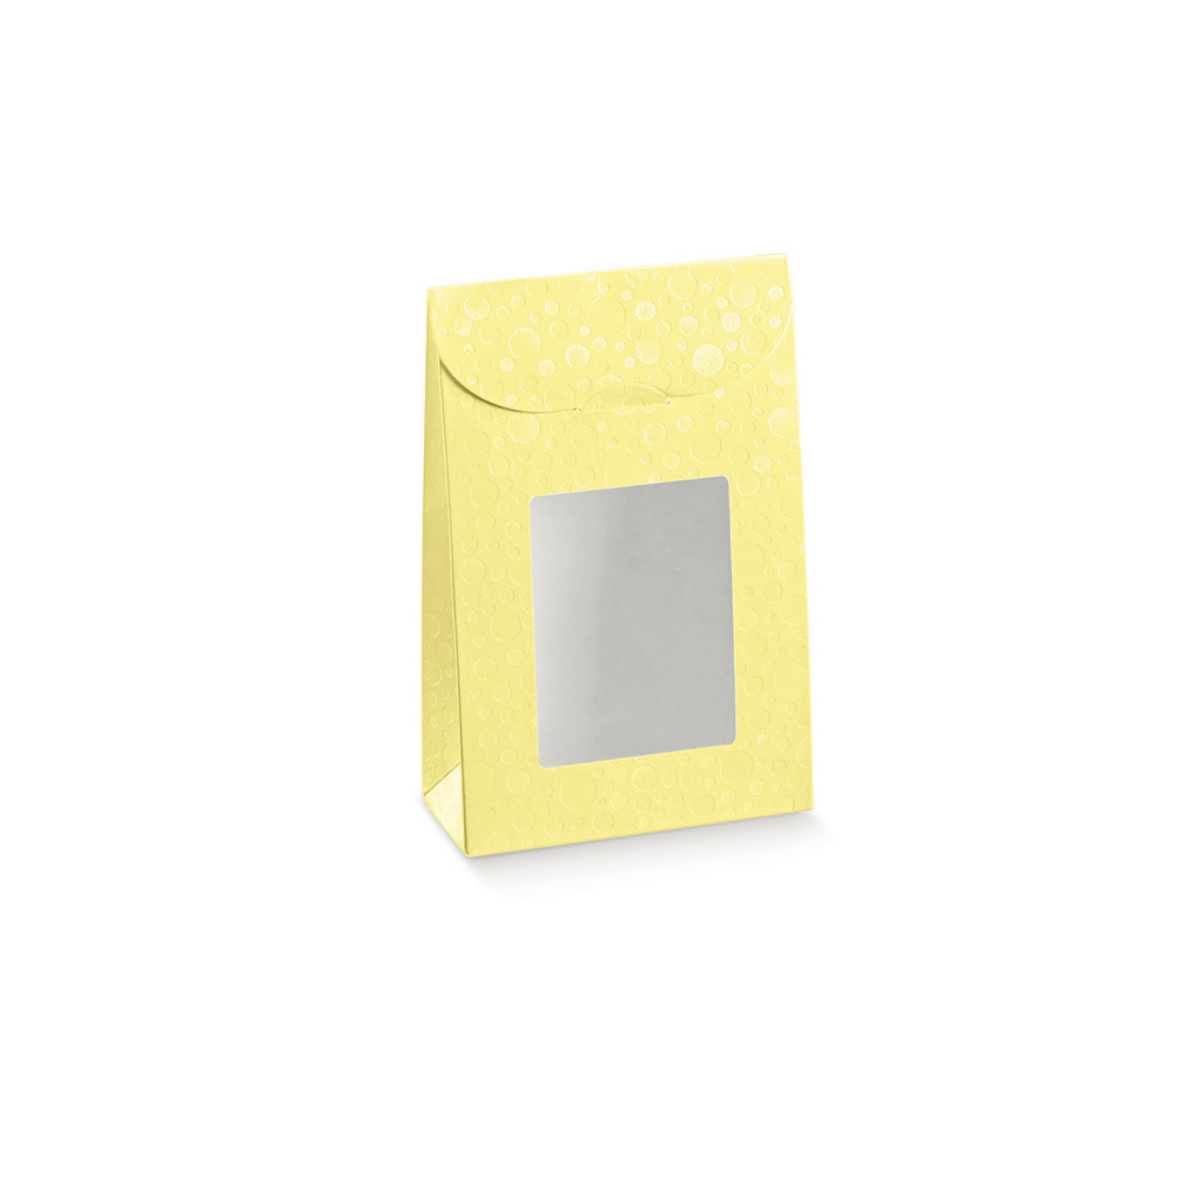 10 pz Sacchetto con finestra in cartone giallo € 0,60 Cad + Iva